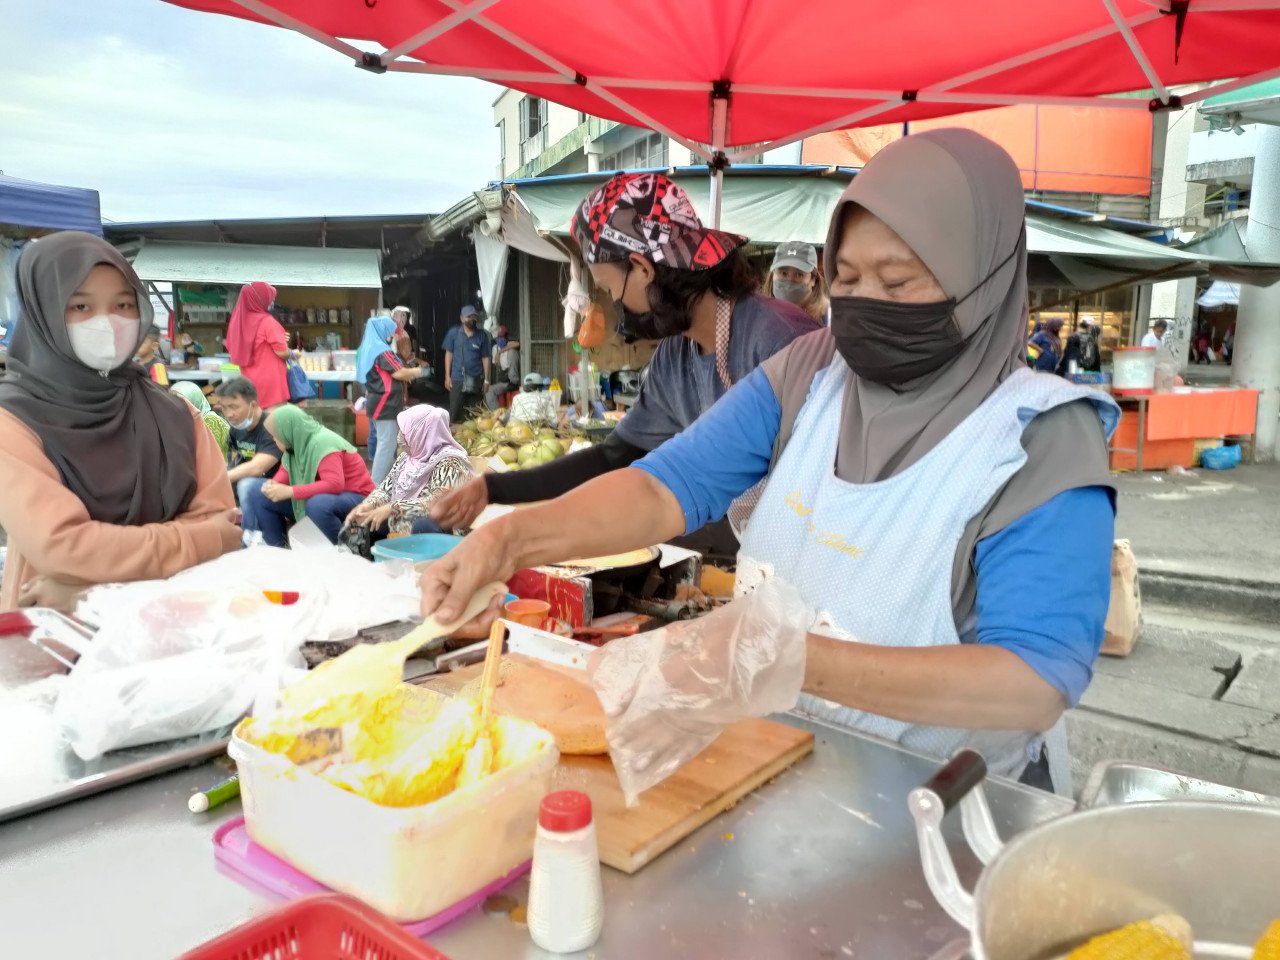 Sumarni berkata, 200 ketul roti jagung miliknya habis dijual pada pukul 4 petang di bazar Ramadan di pekan Sandakan, semalam. - Gambar oleh Rebecca Chong